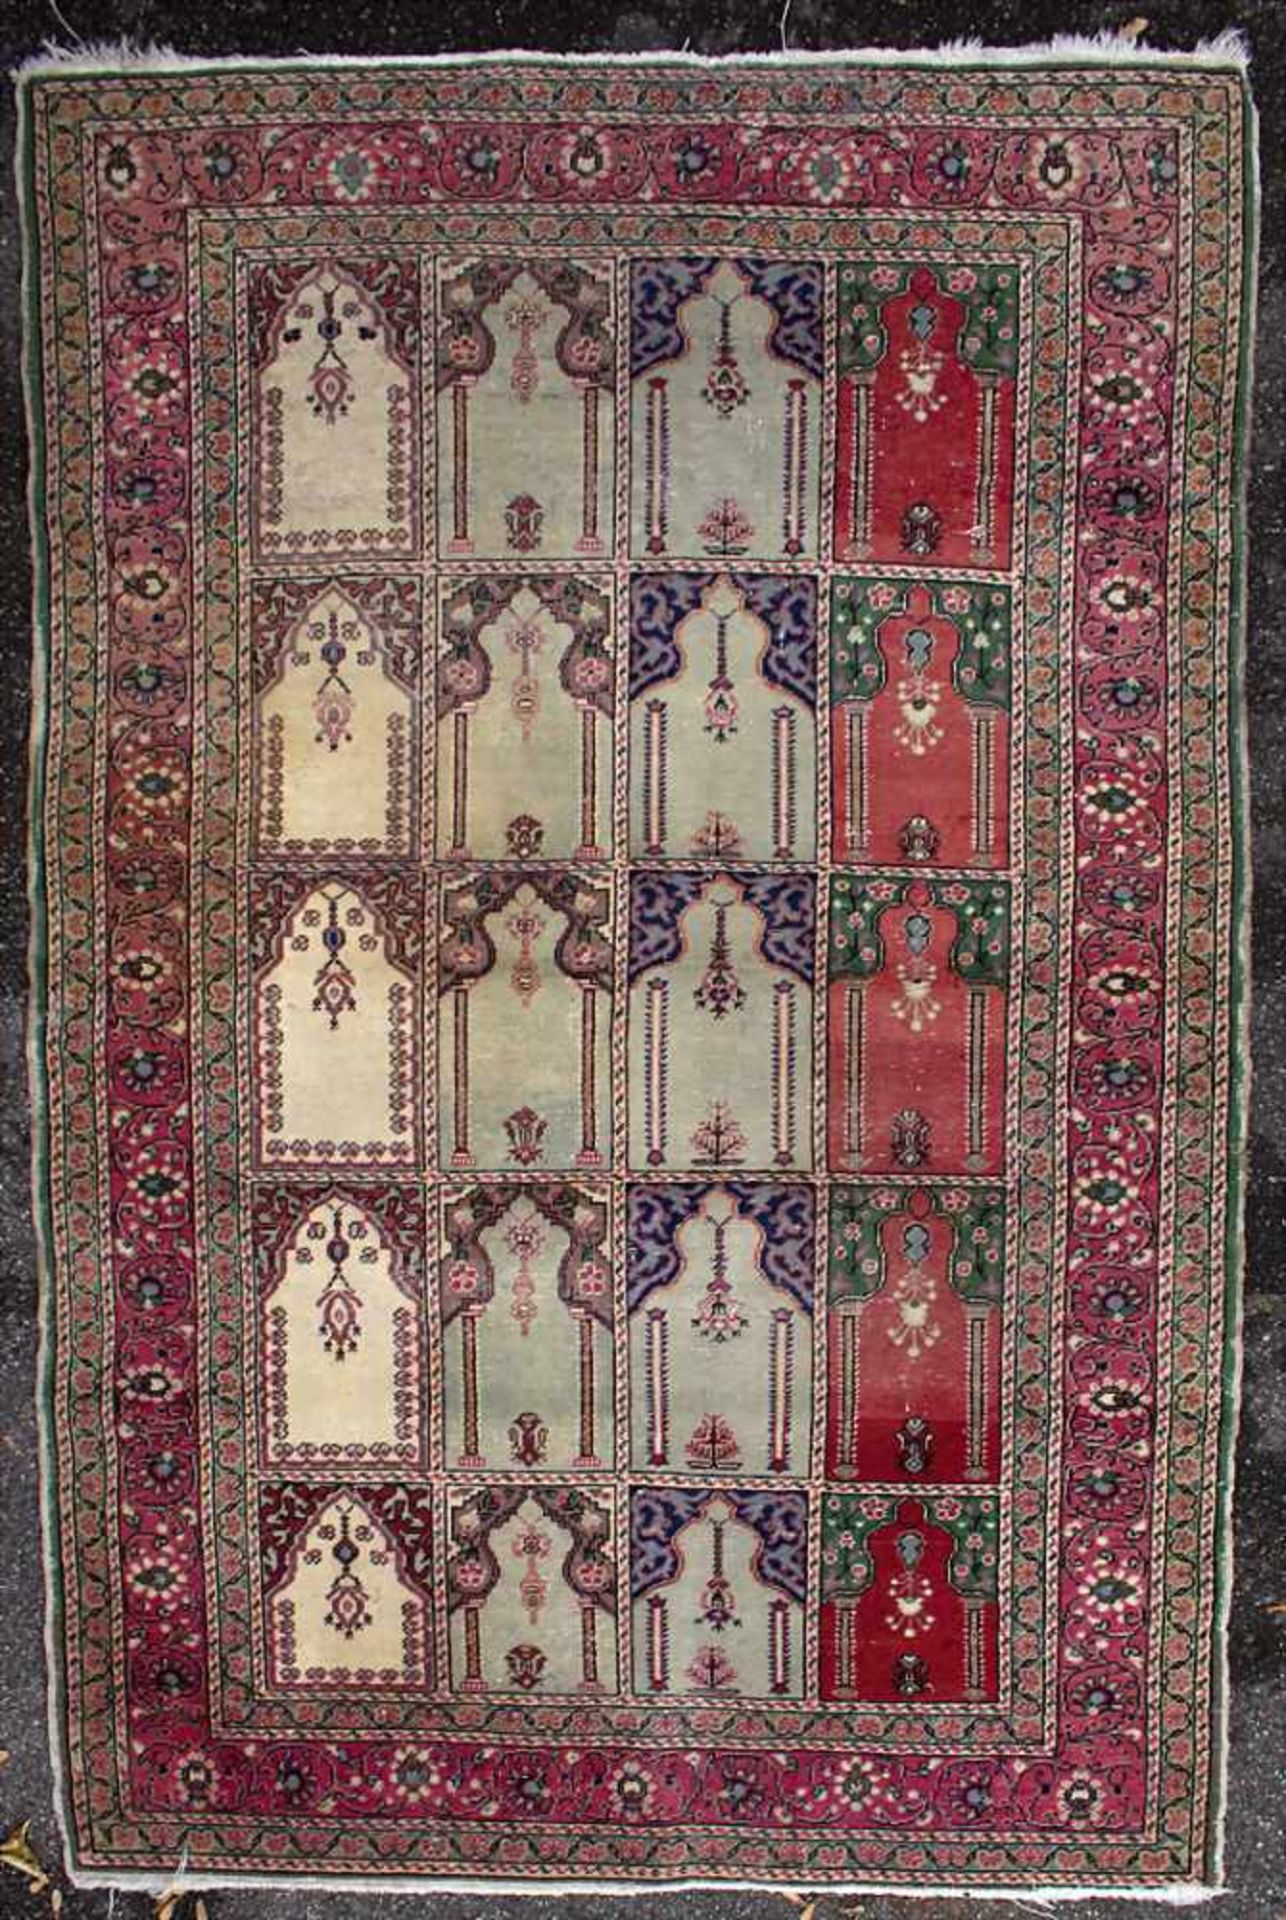 Orienttepppich mit Gebetsnischen / An oriental carpet with mihrabsMaterial: Wolle auf Baumwolle, - Image 2 of 11